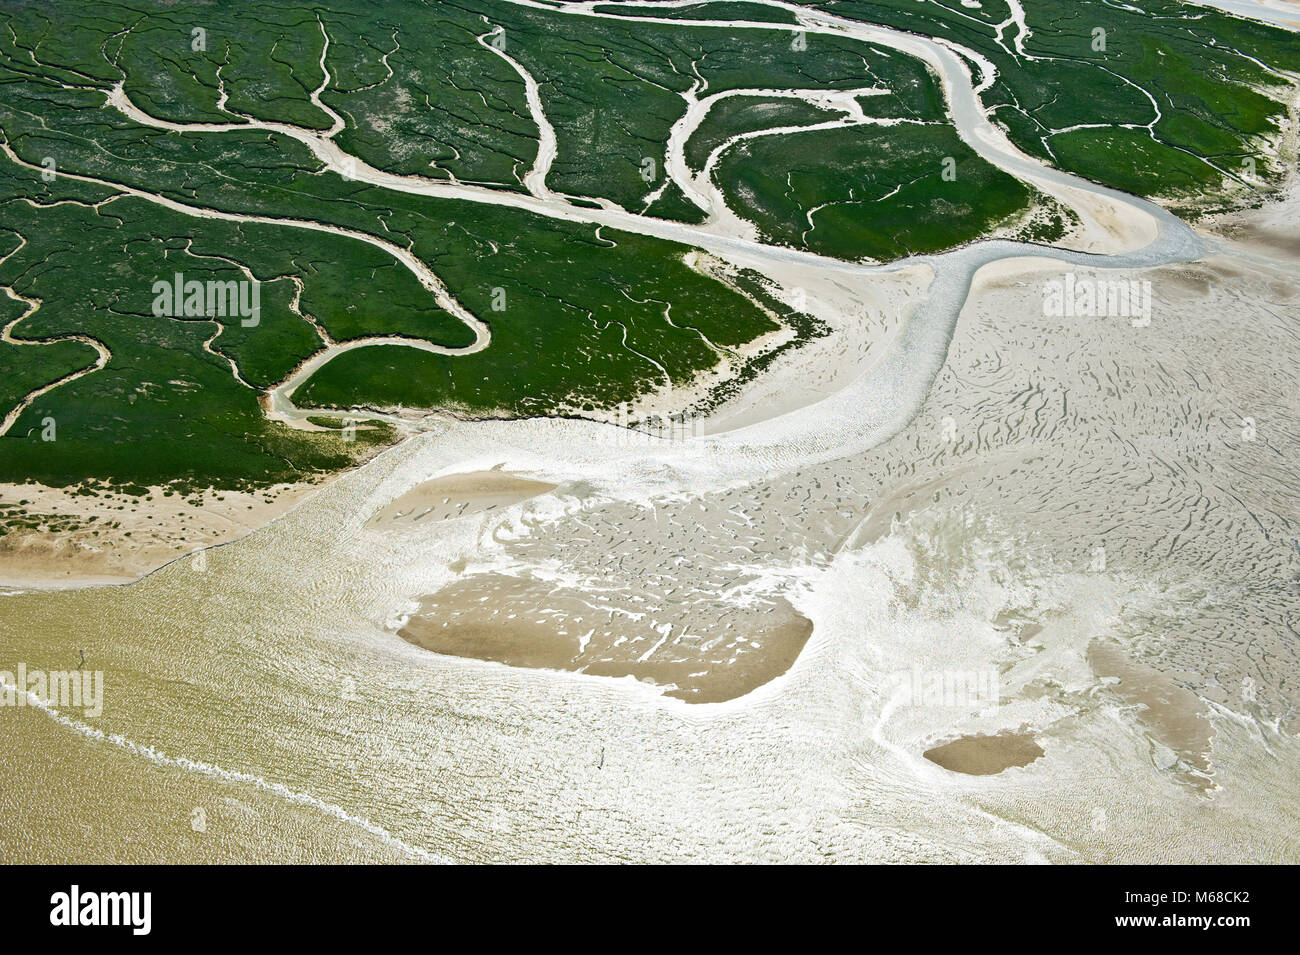 Belle forme in questo riassunto immagine aerea sulla Baie de la Somme a bassa marea Foto Stock